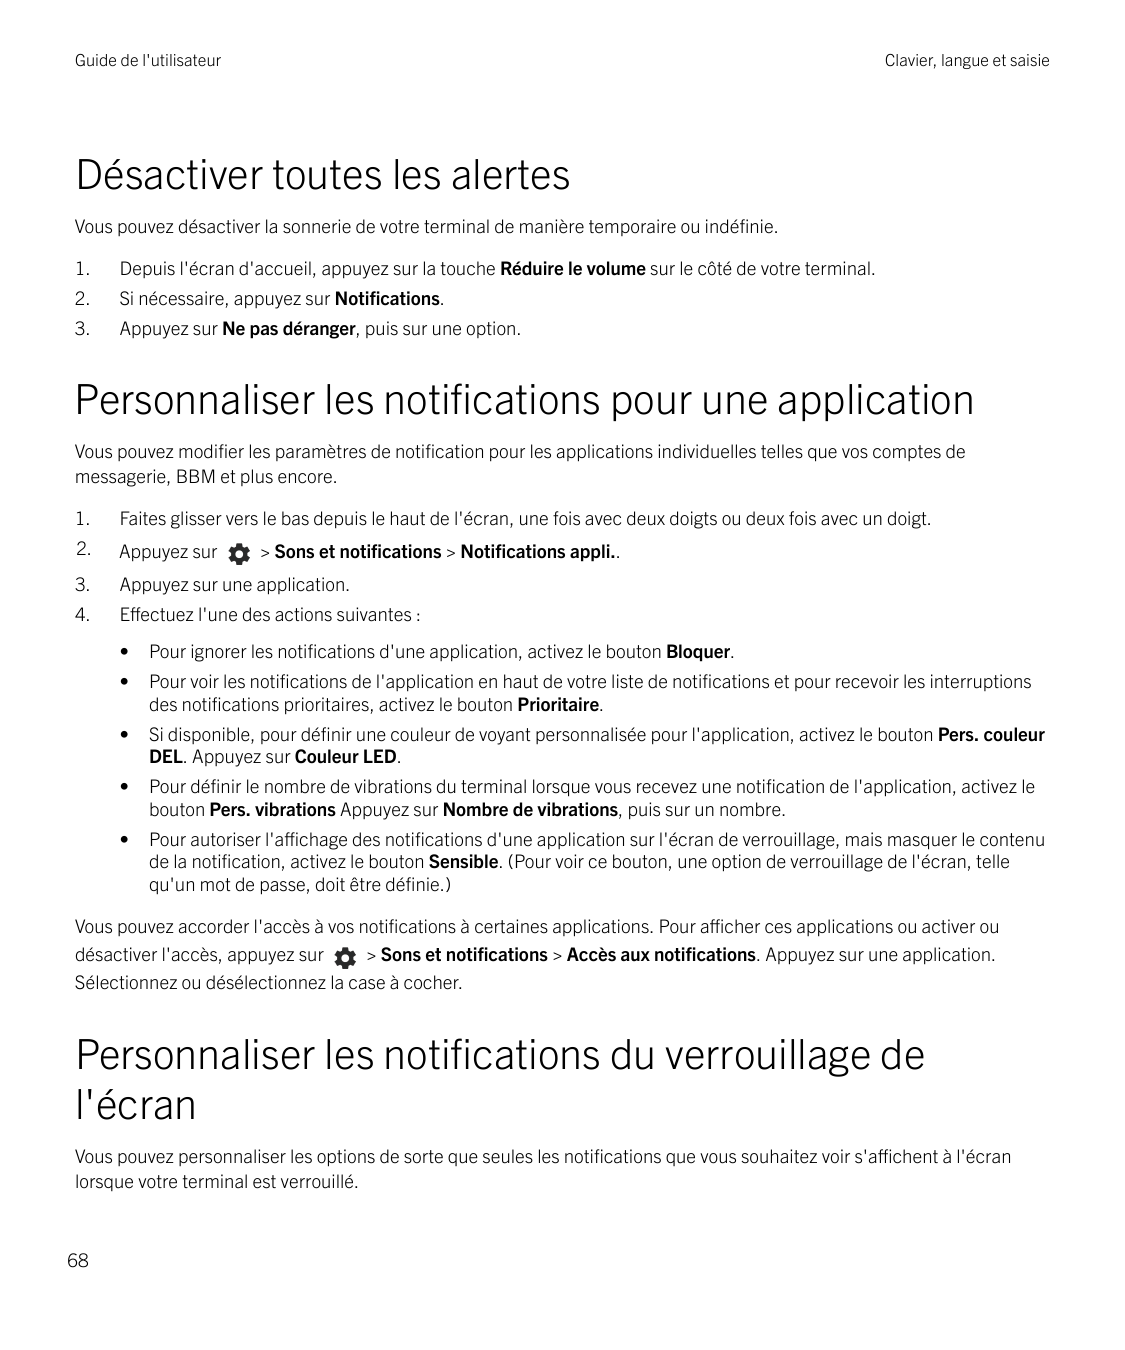 Guide de l'utilisateurClavier, langue et saisieDésactiver toutes les alertesVous pouvez désactiver la sonnerie de votre terminal